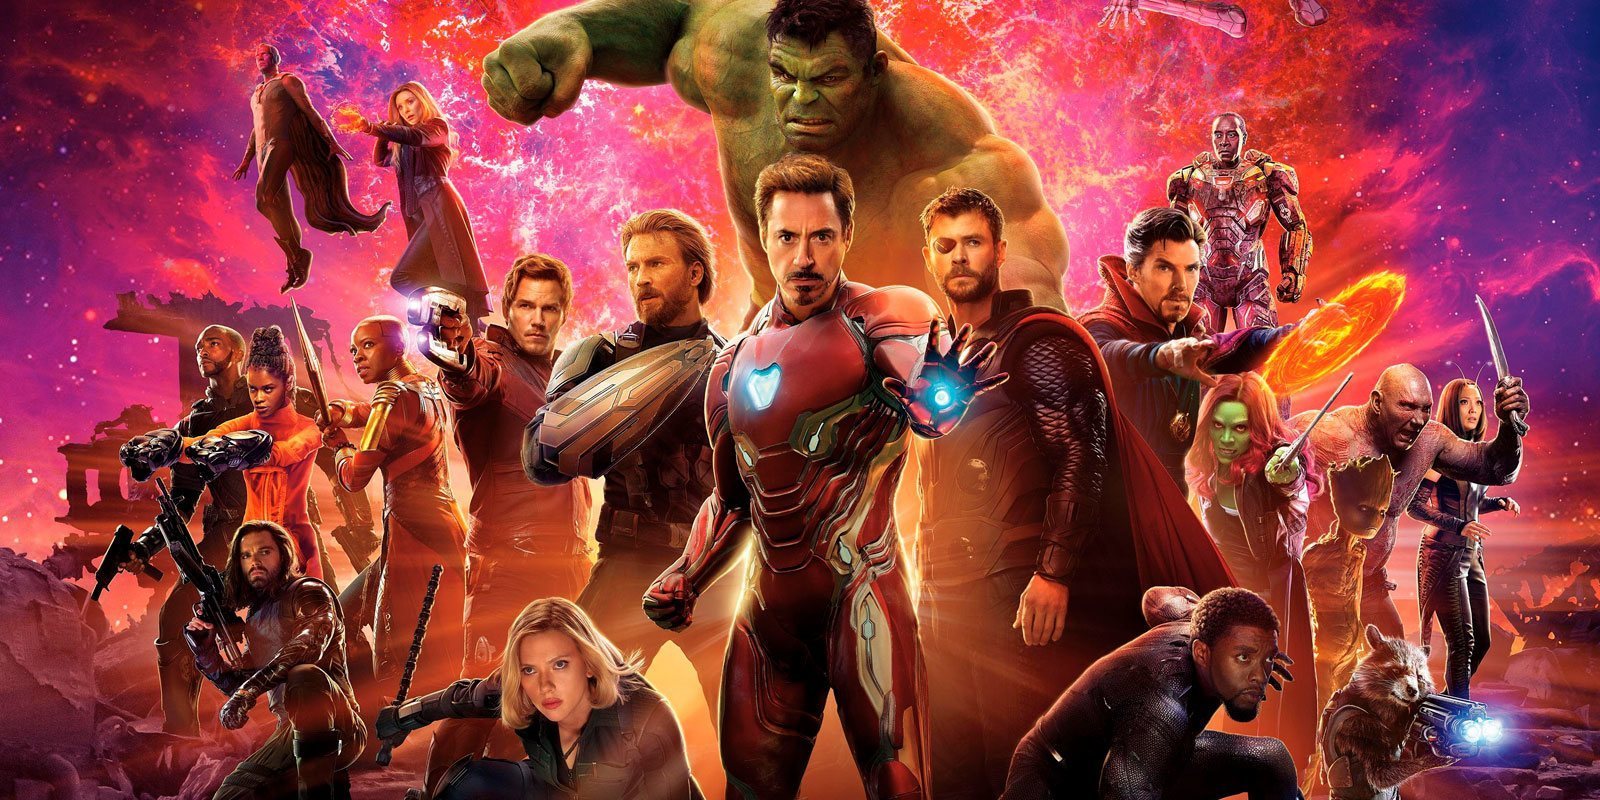 Personajes 'Vengadores: Infinity War': Quién es quién en la mayor reunión superheróica del cine